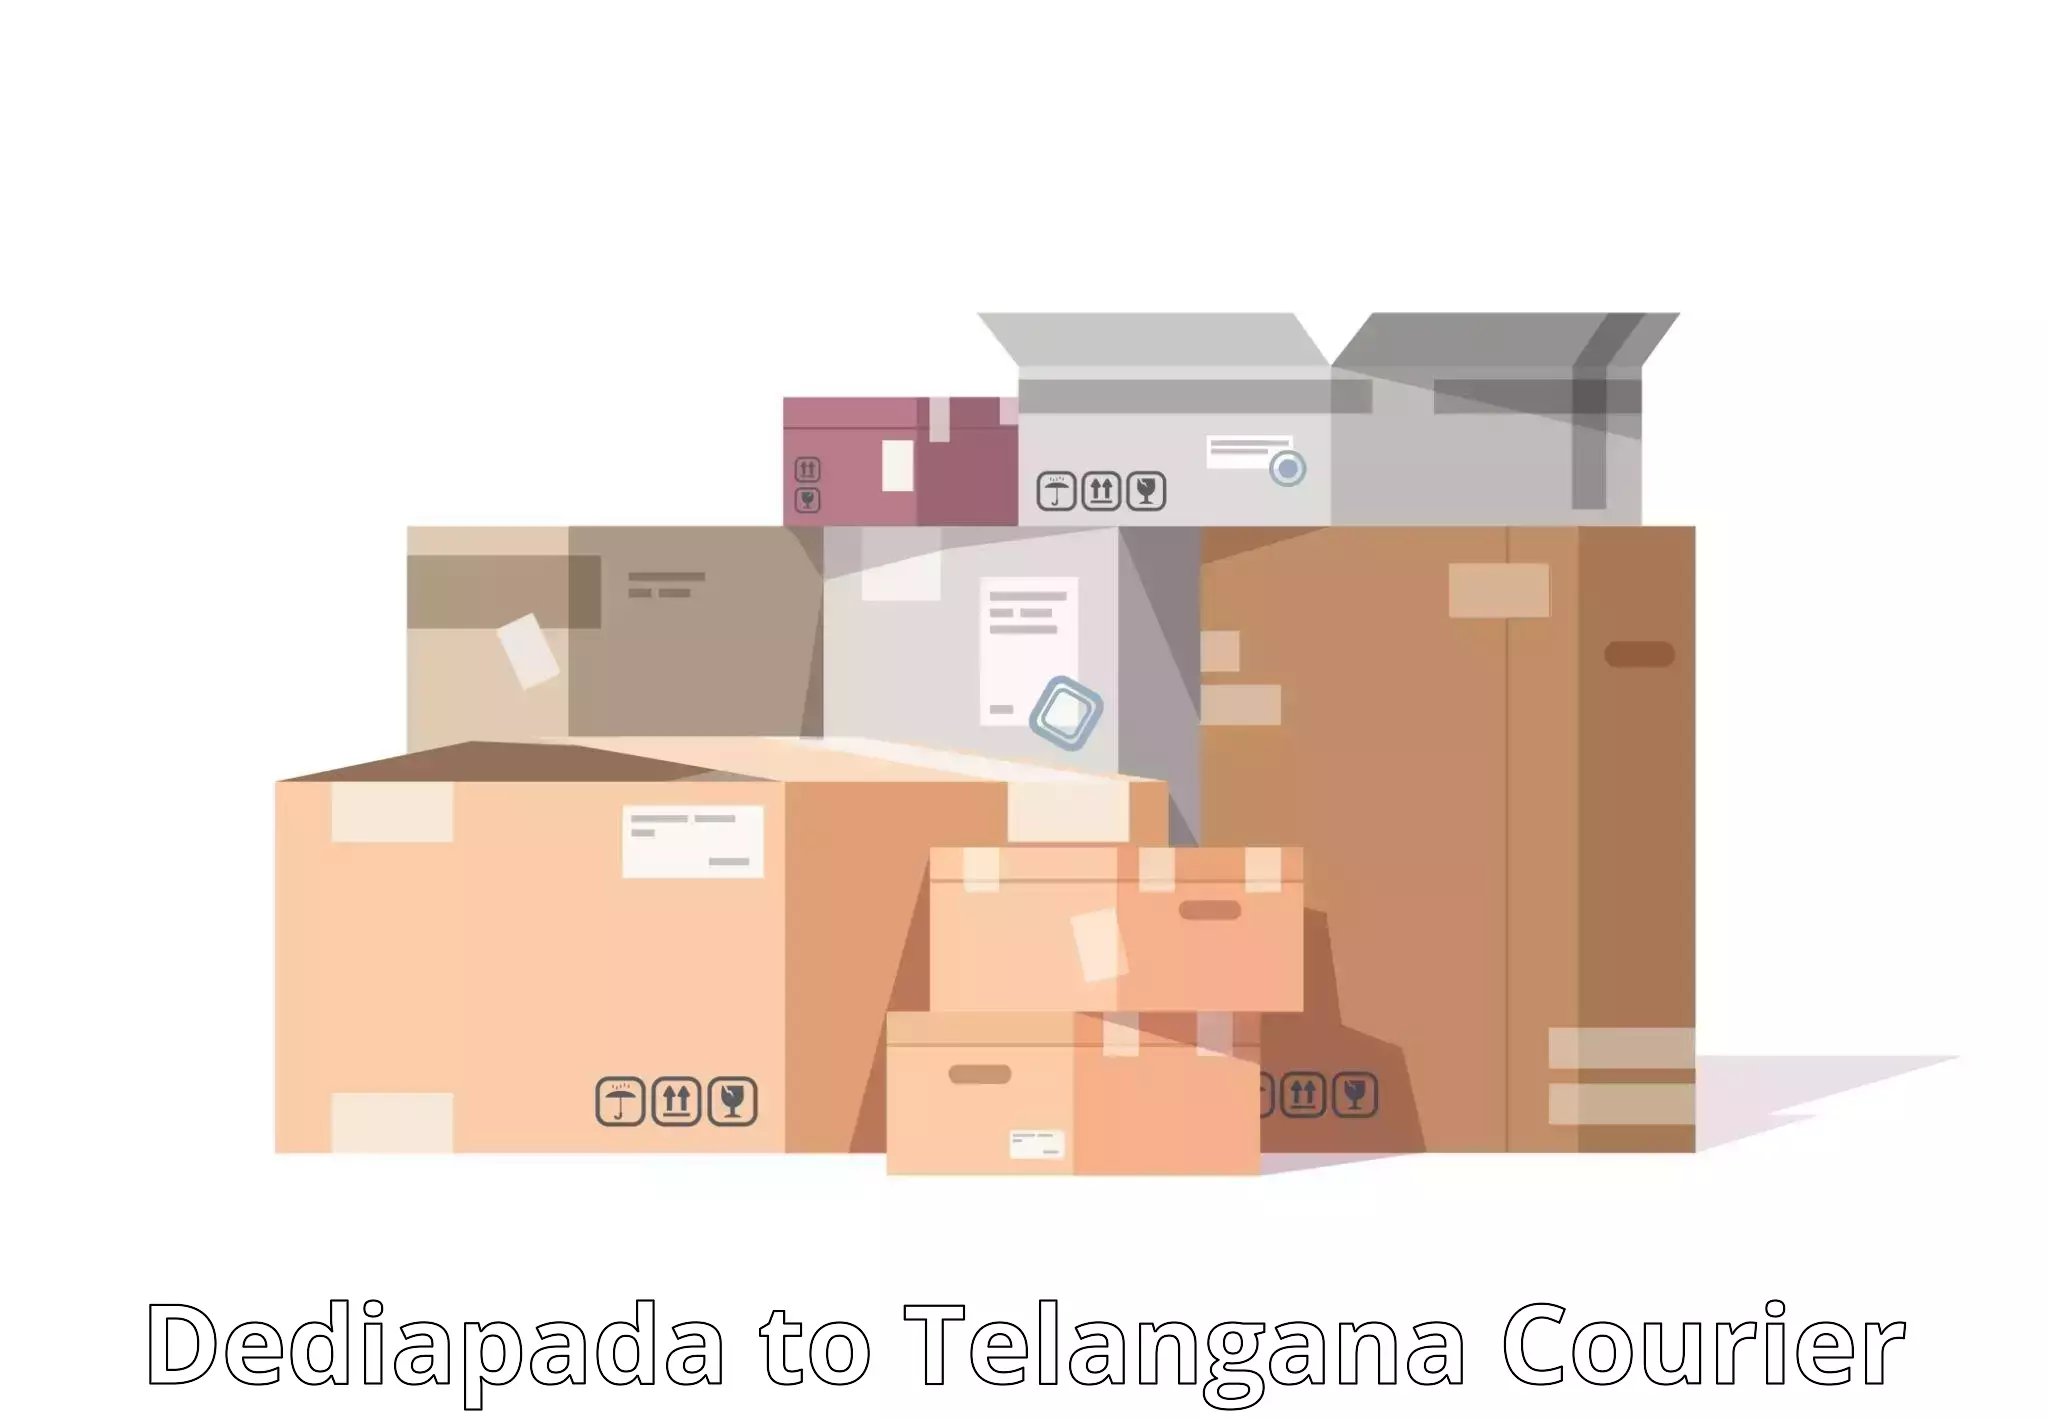 Pharmaceutical courier Dediapada to Telangana